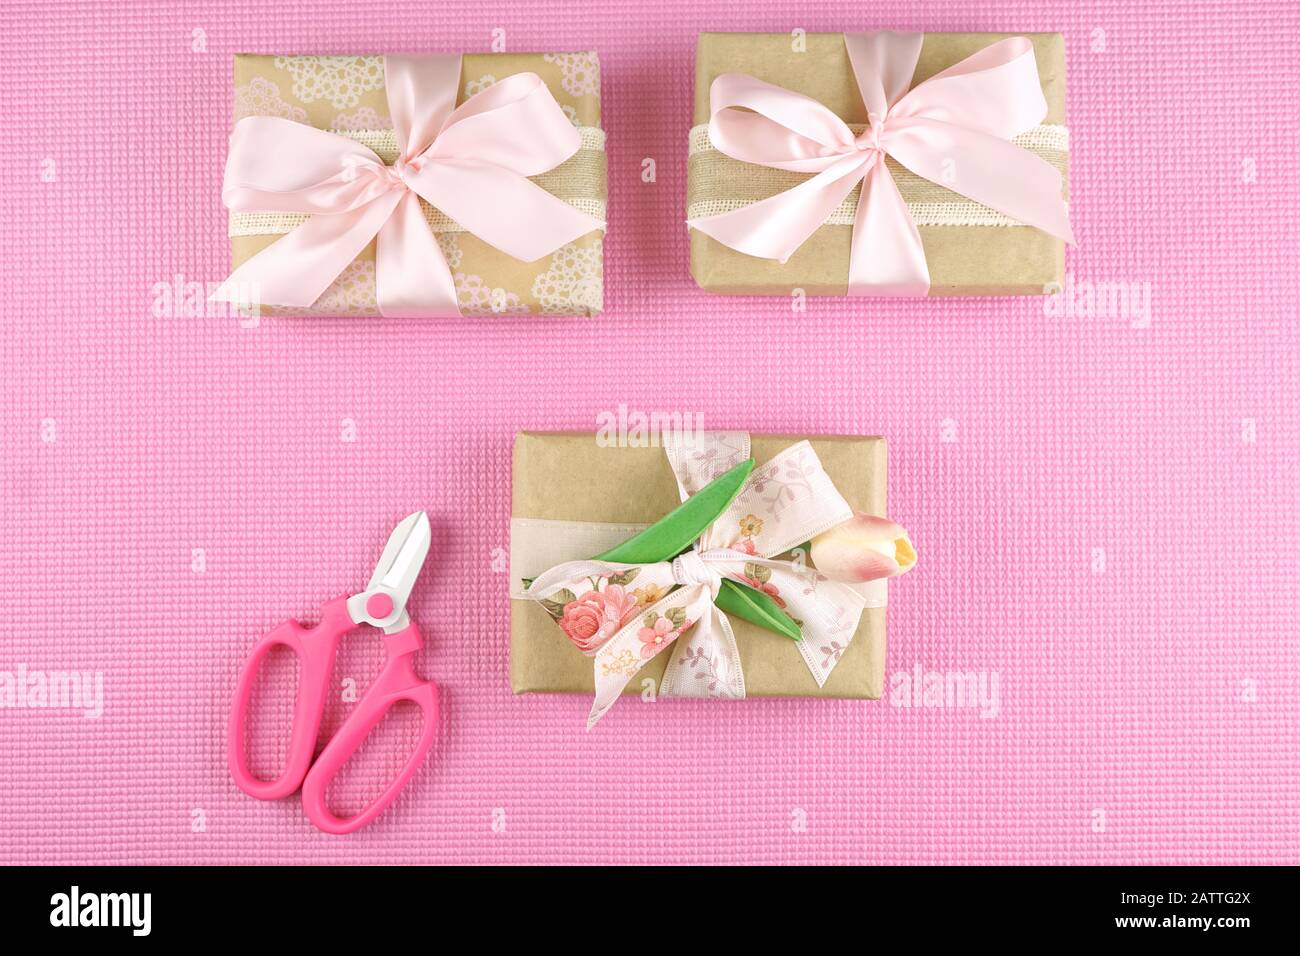 Regali avvolti in carta kraft e nastri rosa overhead laici piatto per la Festa della mamma, festa di compleanno o il giorno di San Valentino celebrazioni. Foto Stock